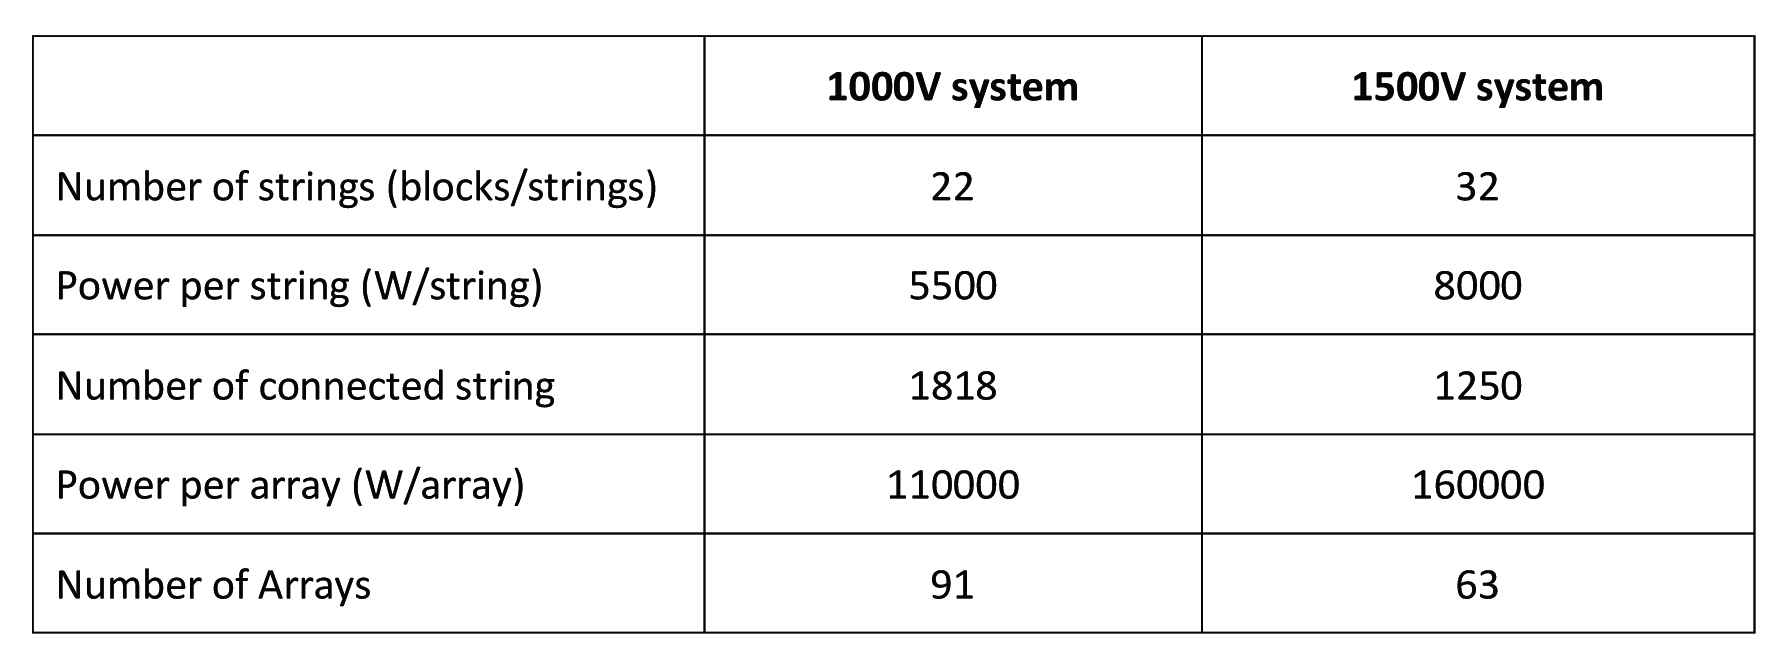 Design comparison between 1000V system and 1500V system